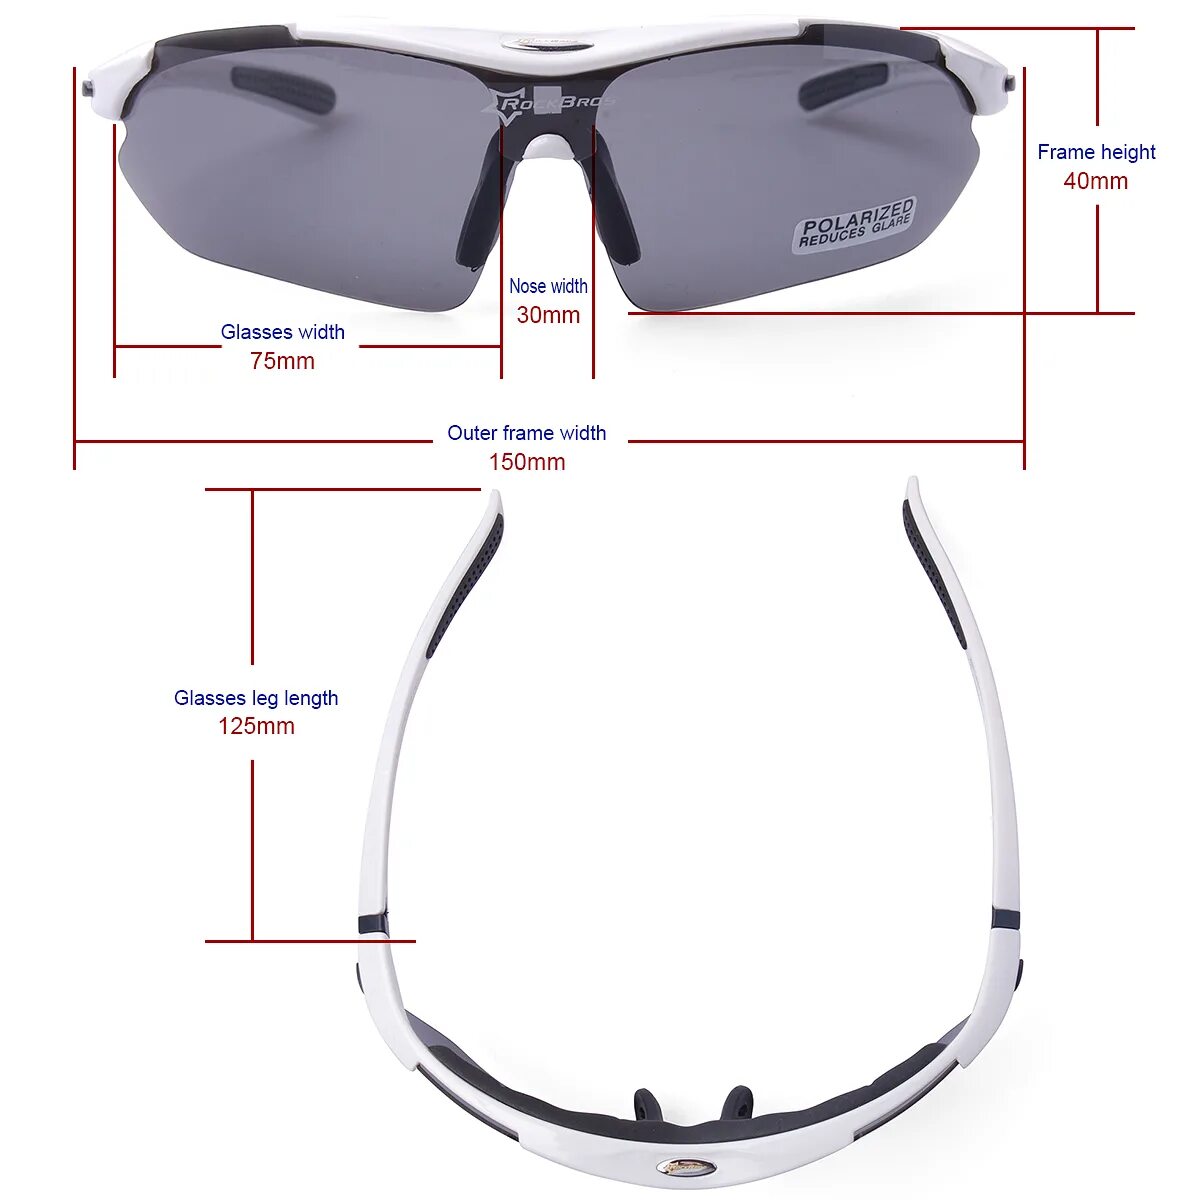 Велосипедные очки ROCKBROS 10001. 10002 ROCKBROS очки. Размер очков 1sz Quicksilver. Очки ROCKBROS Glasses Pro.